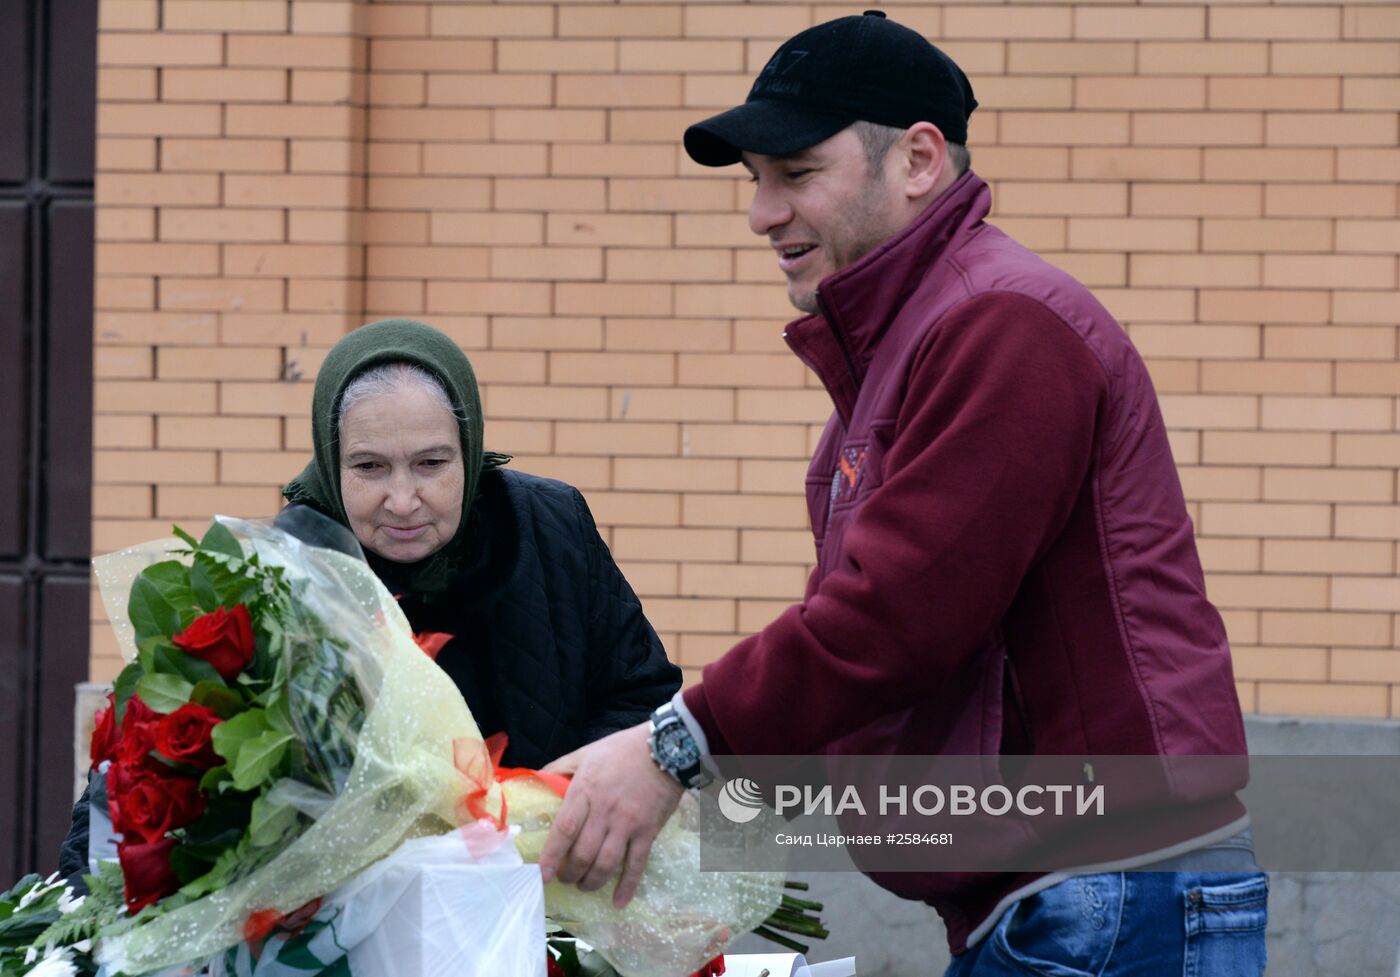 Продажа цветов 8 марта в Грозном